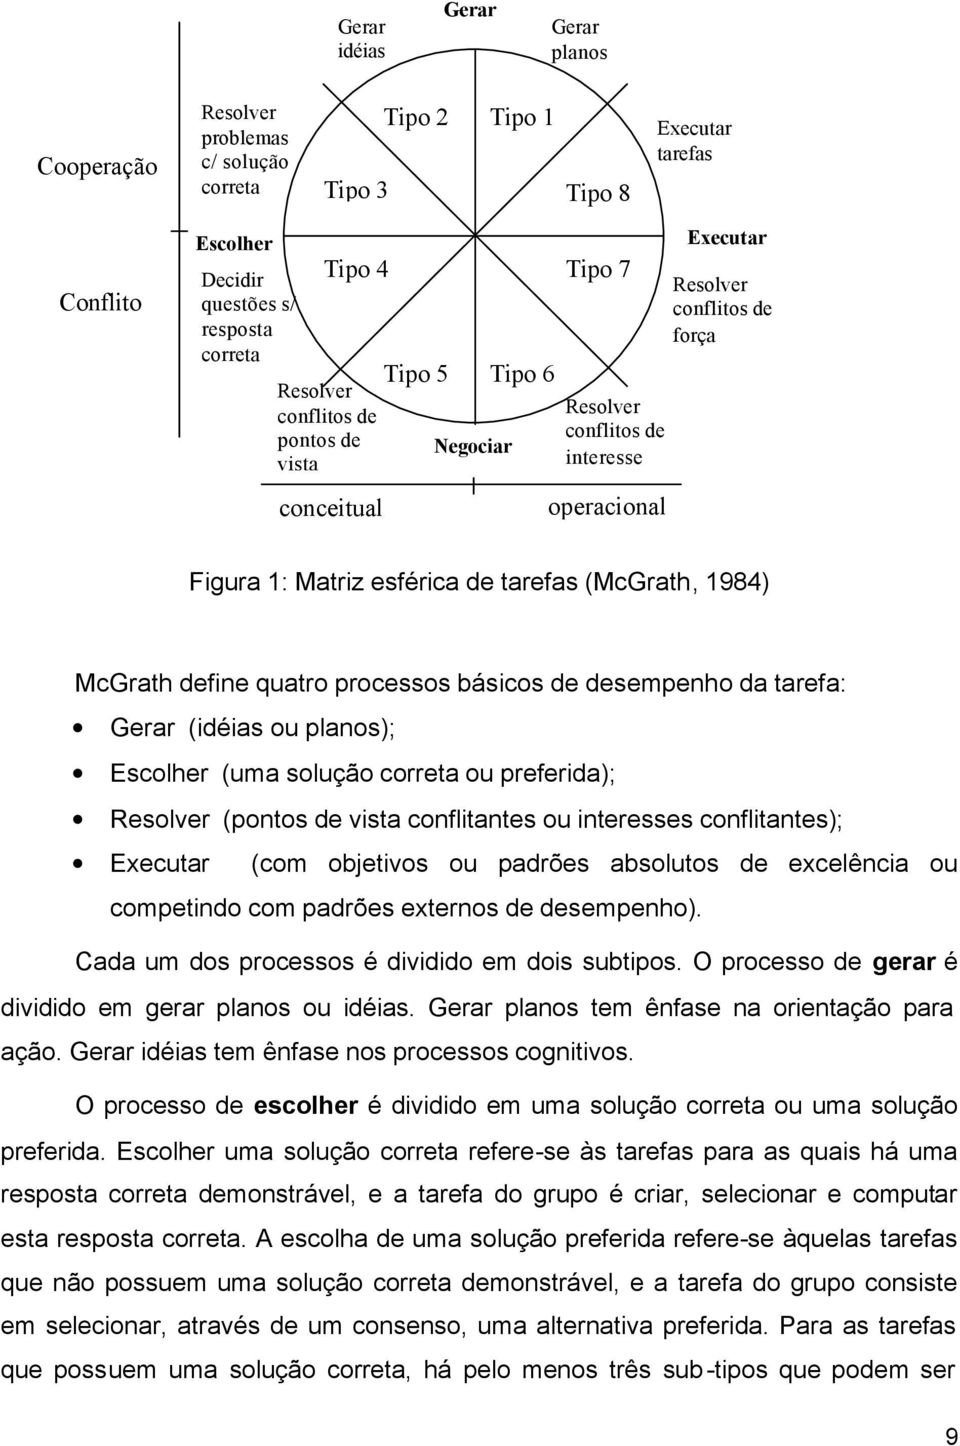 1984) McGrath define quatro processos básicos de desempenho da tarefa: Gerar (idéias ou planos); Escolher (uma solução correta ou preferida); Resolver (pontos de vista conflitantes ou interesses